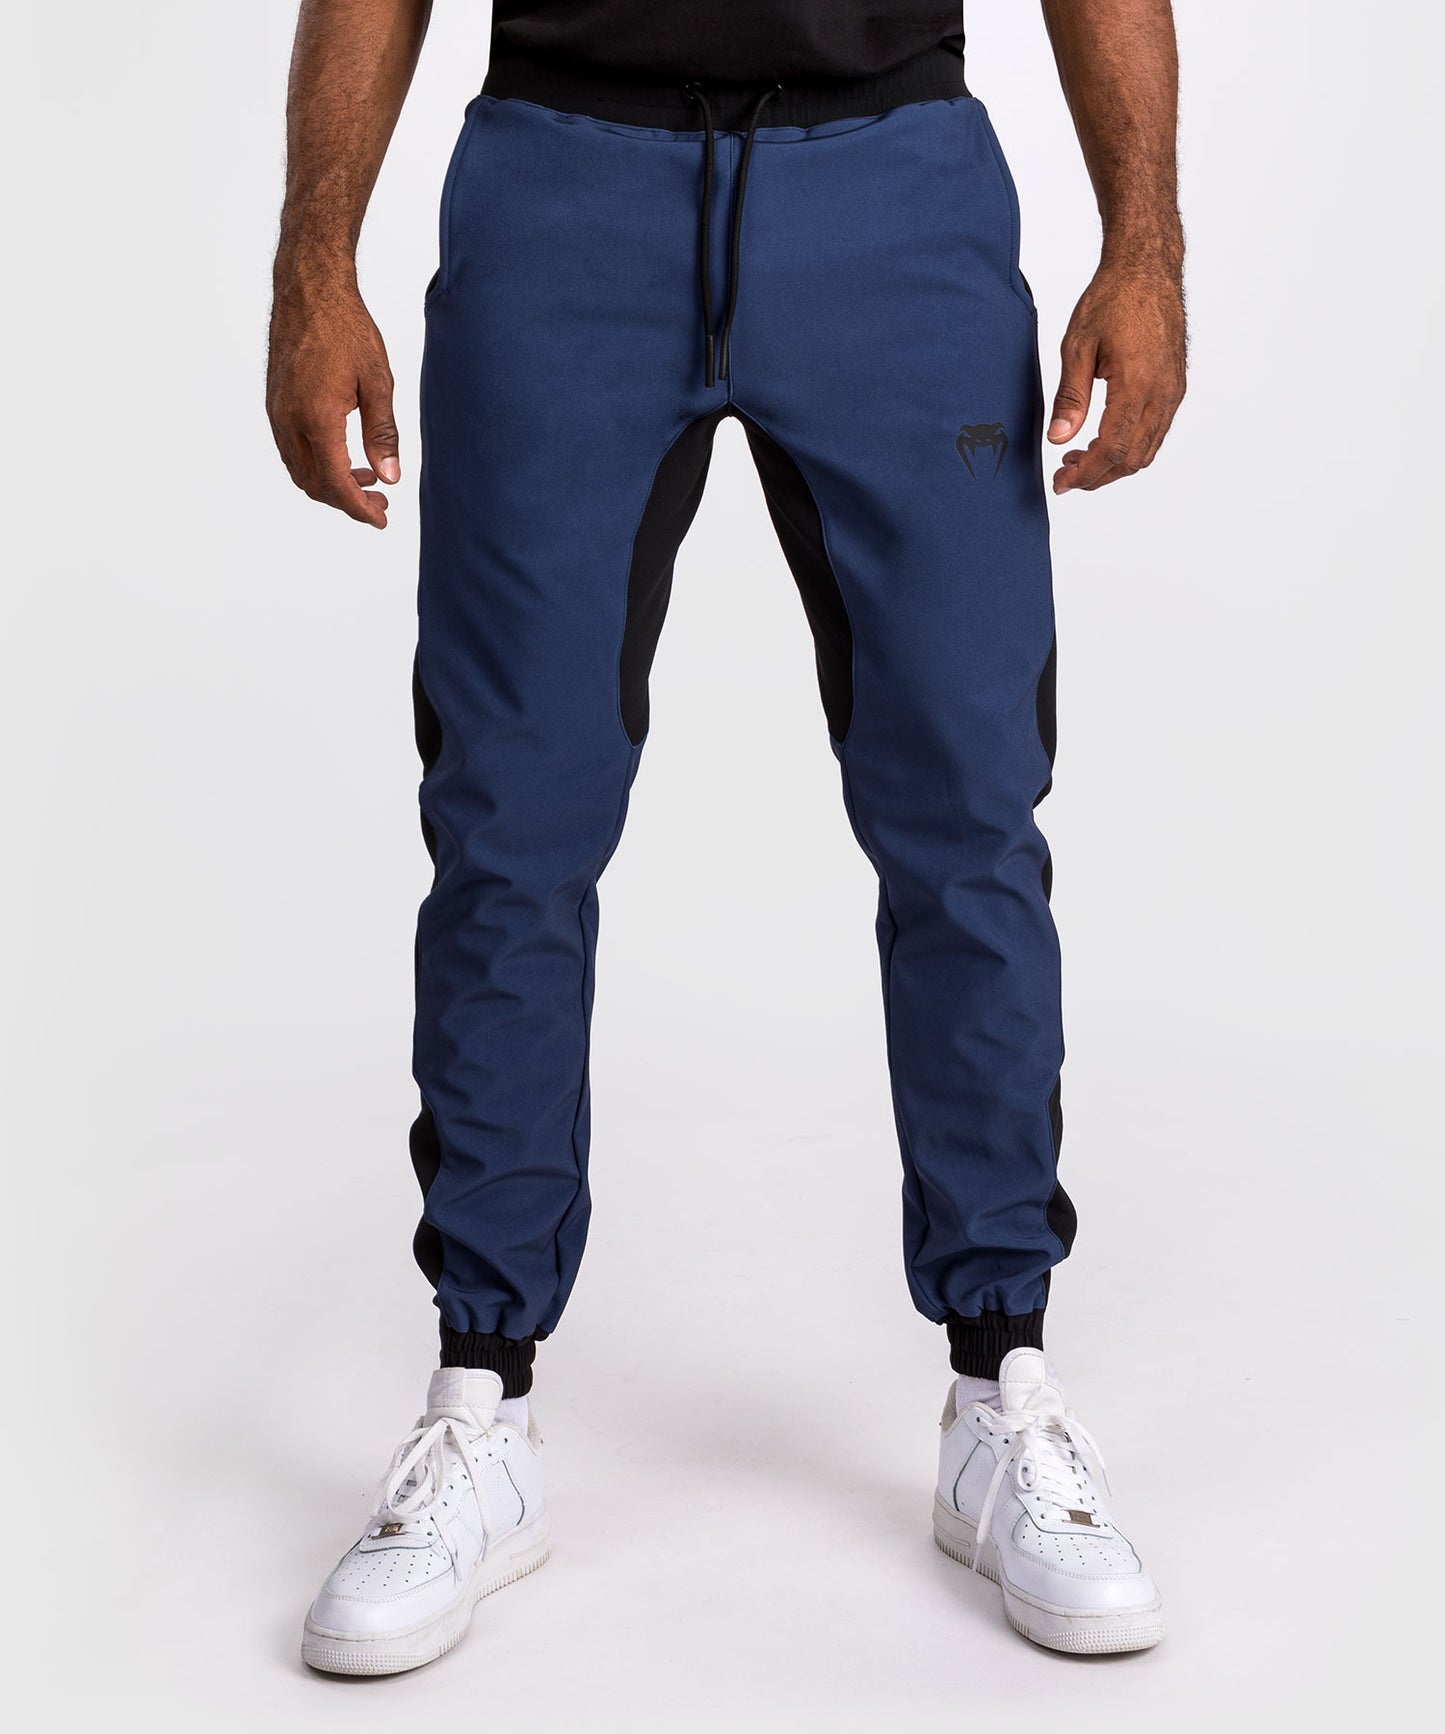 Pantalon de jogging Venum Laser 3.0 - Noir/Bleu